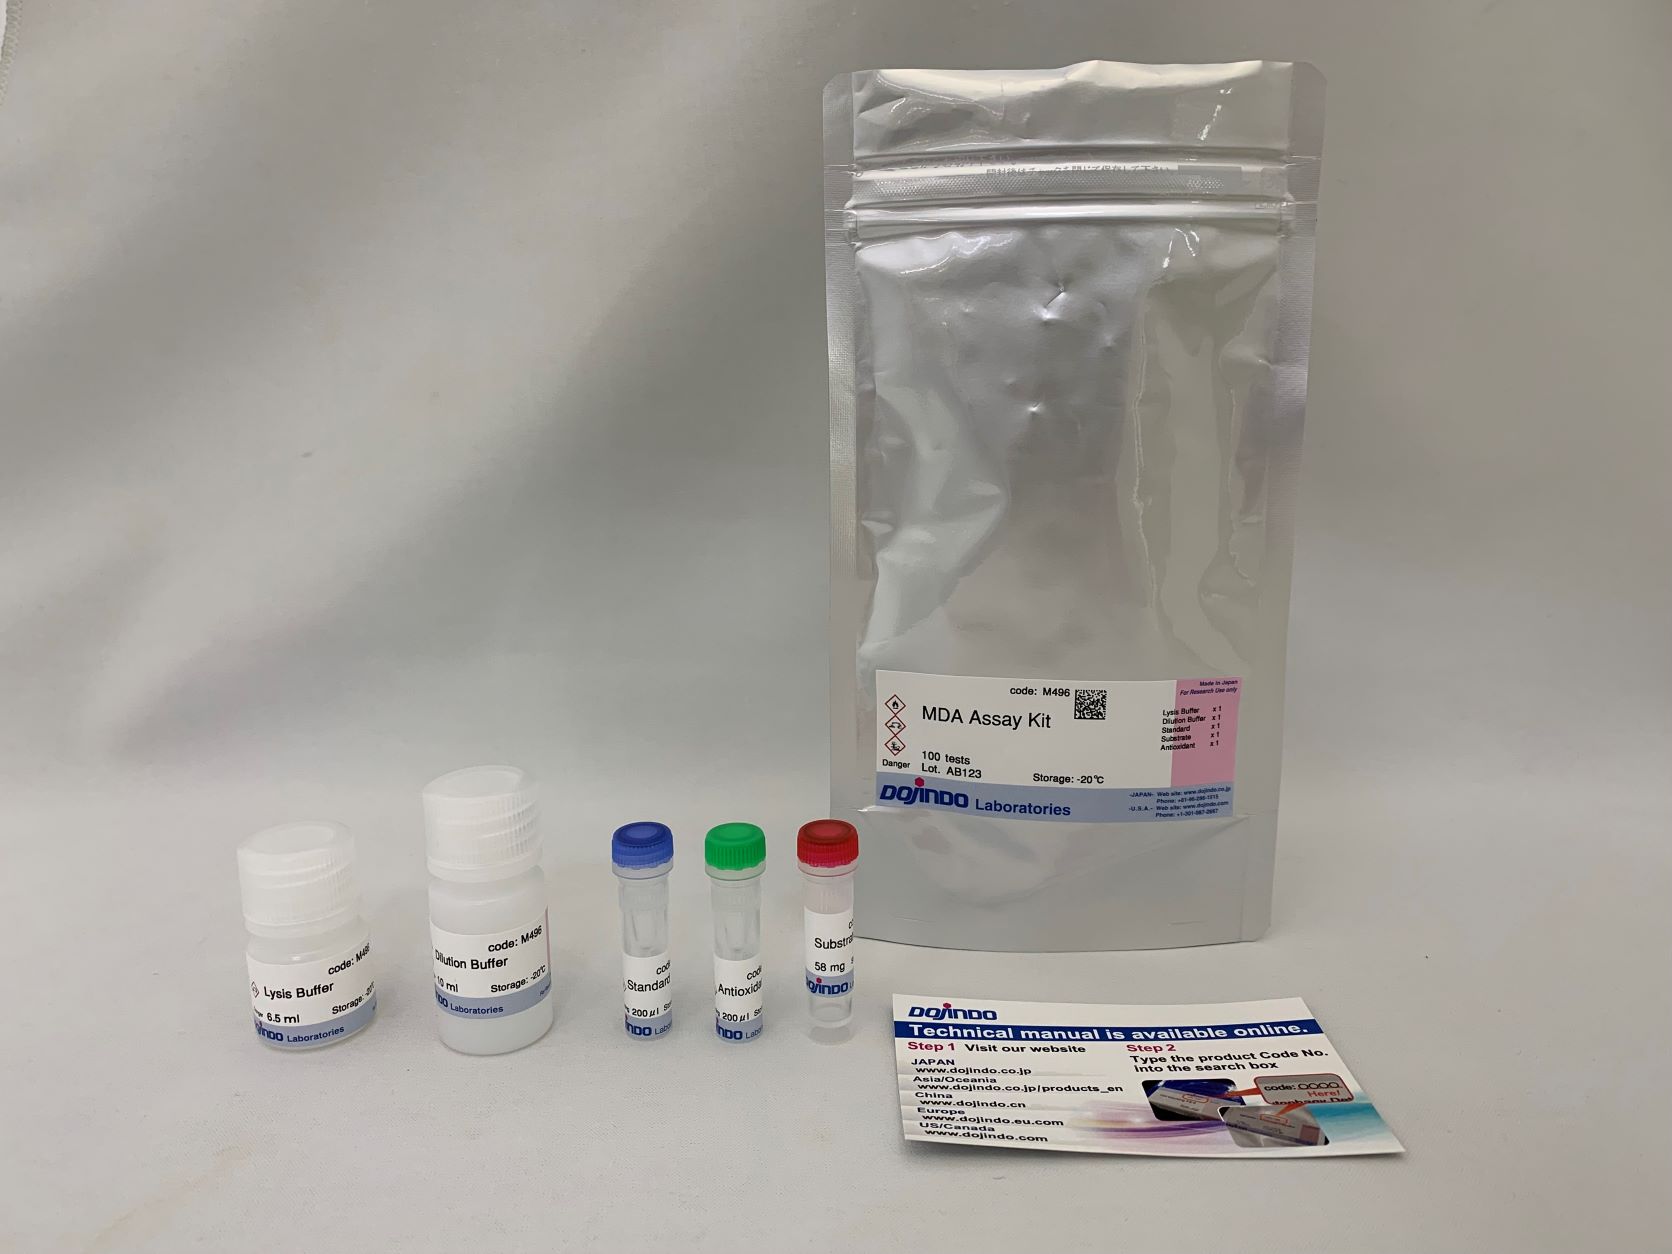 胱氨酸摄取能力检测试剂盒—Cystine Uptake Assay Kit货号：UP05